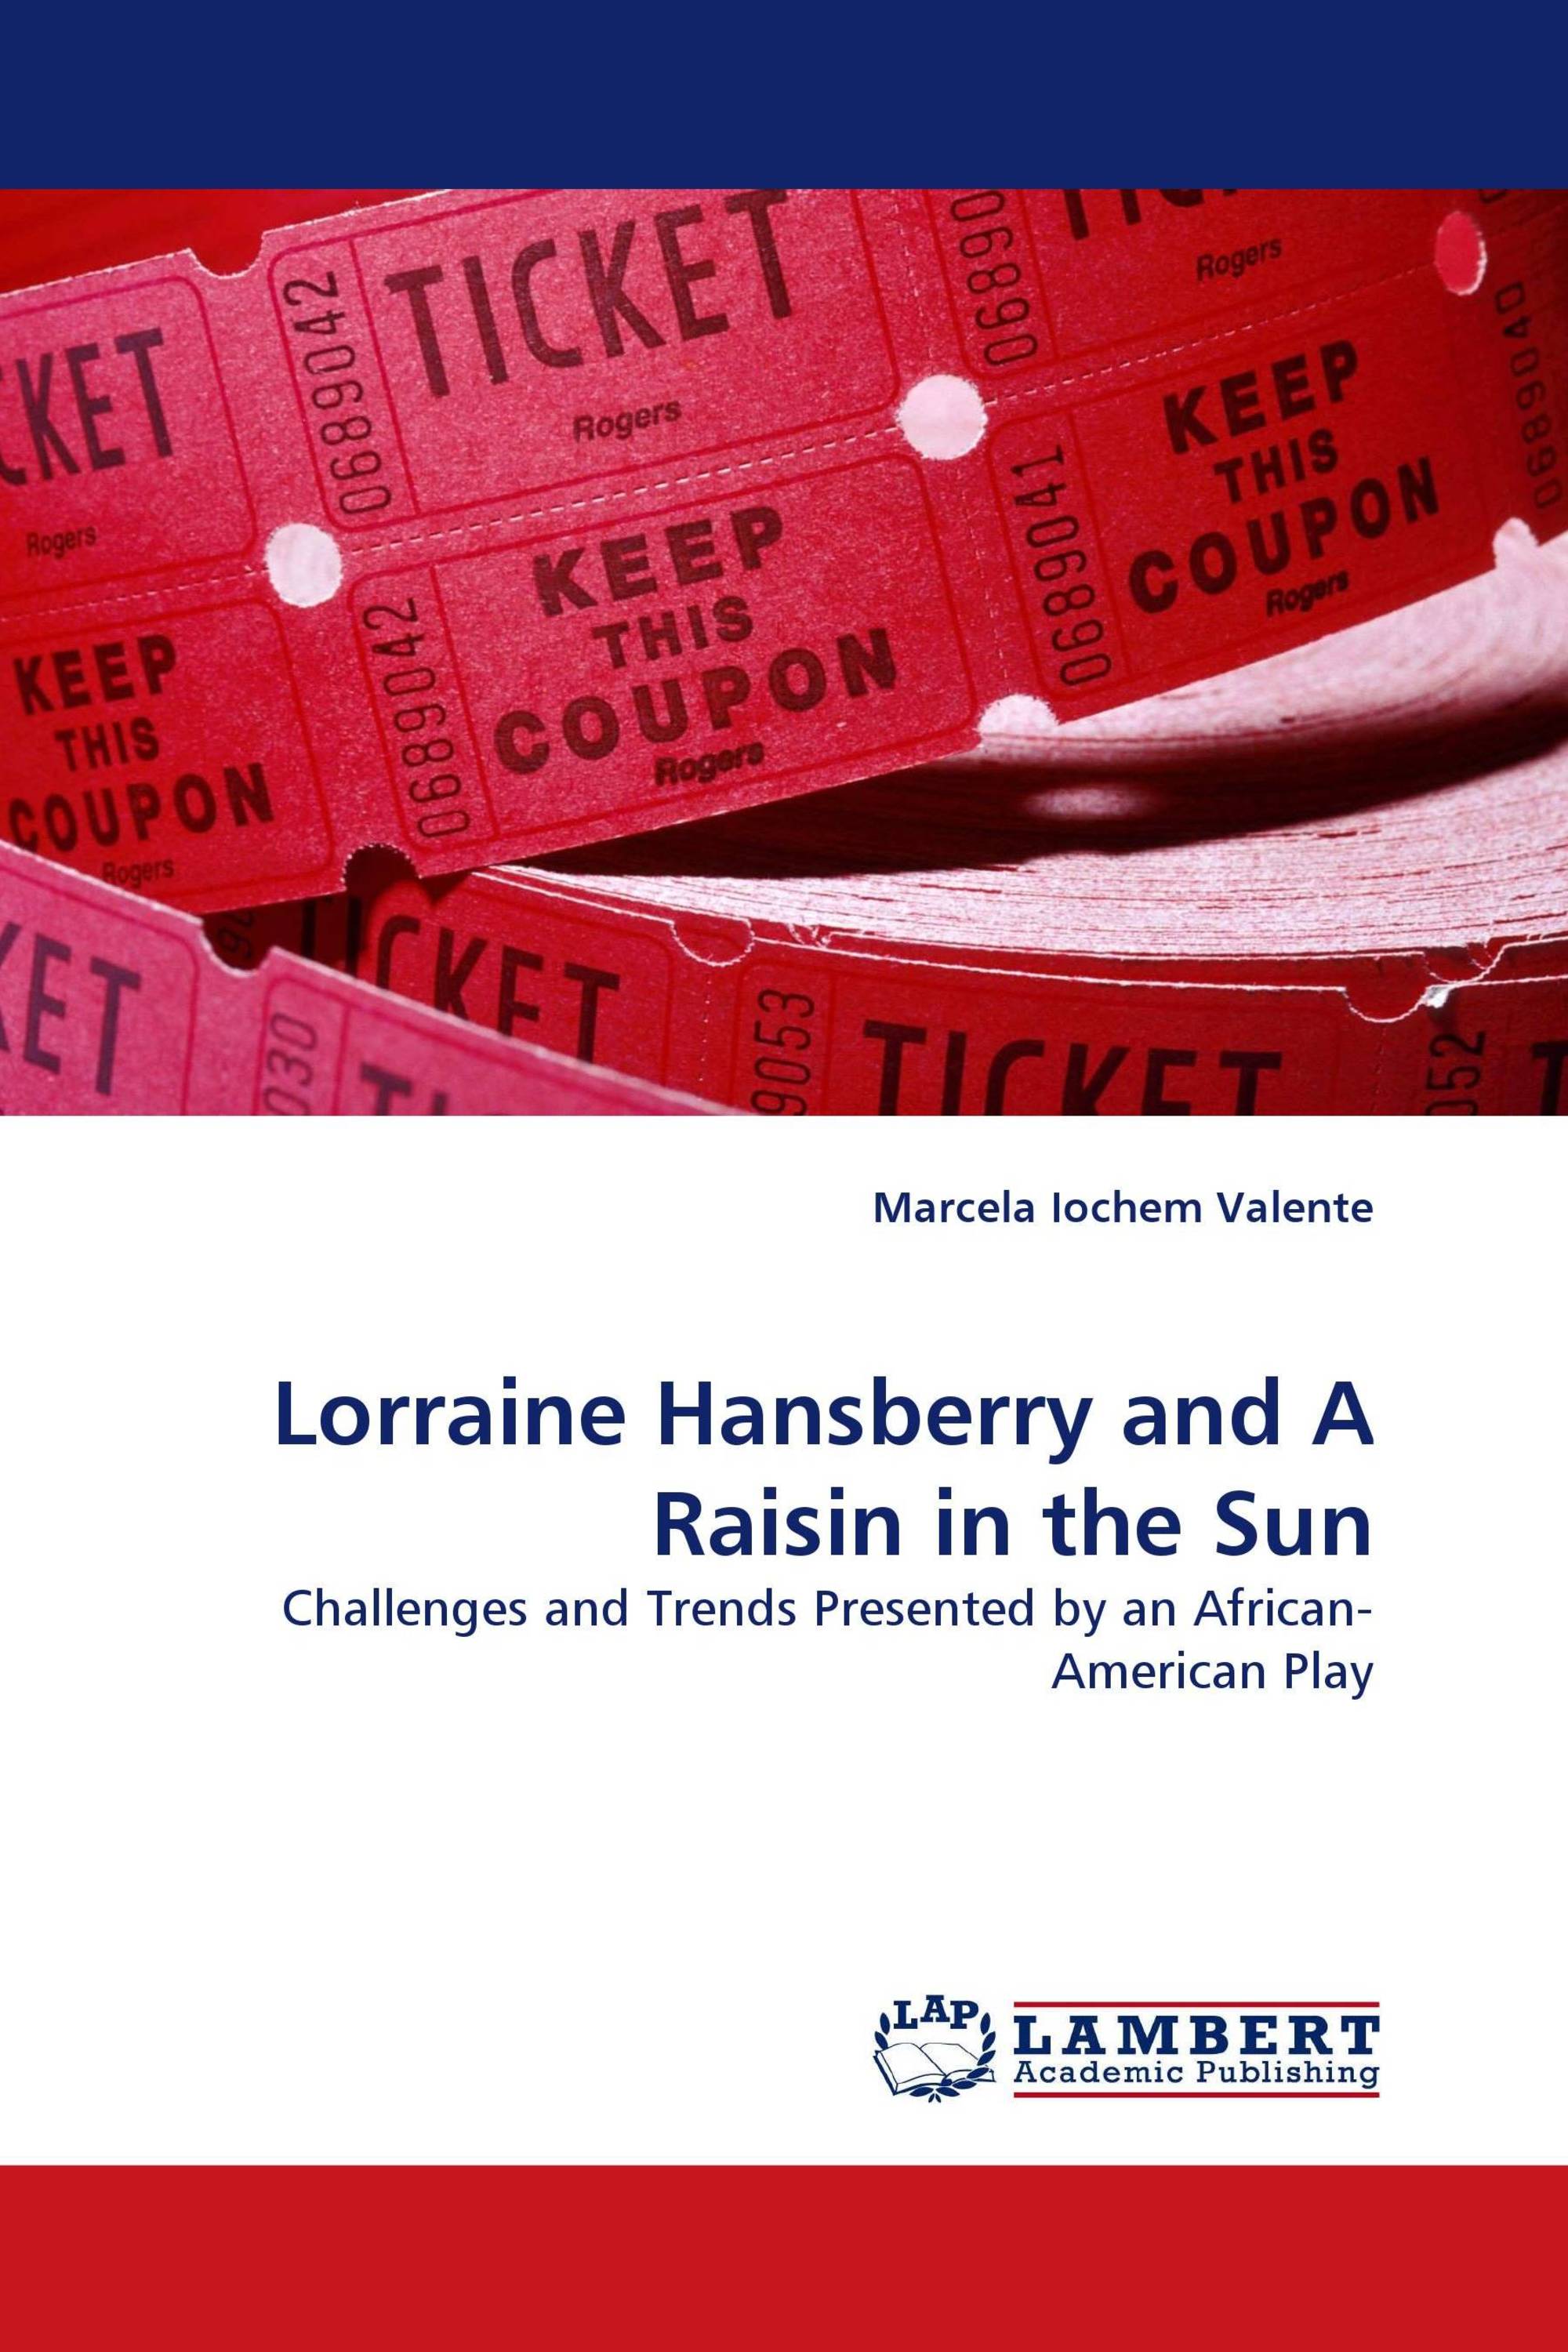 a raisin in the sun by lorraine hansberry play